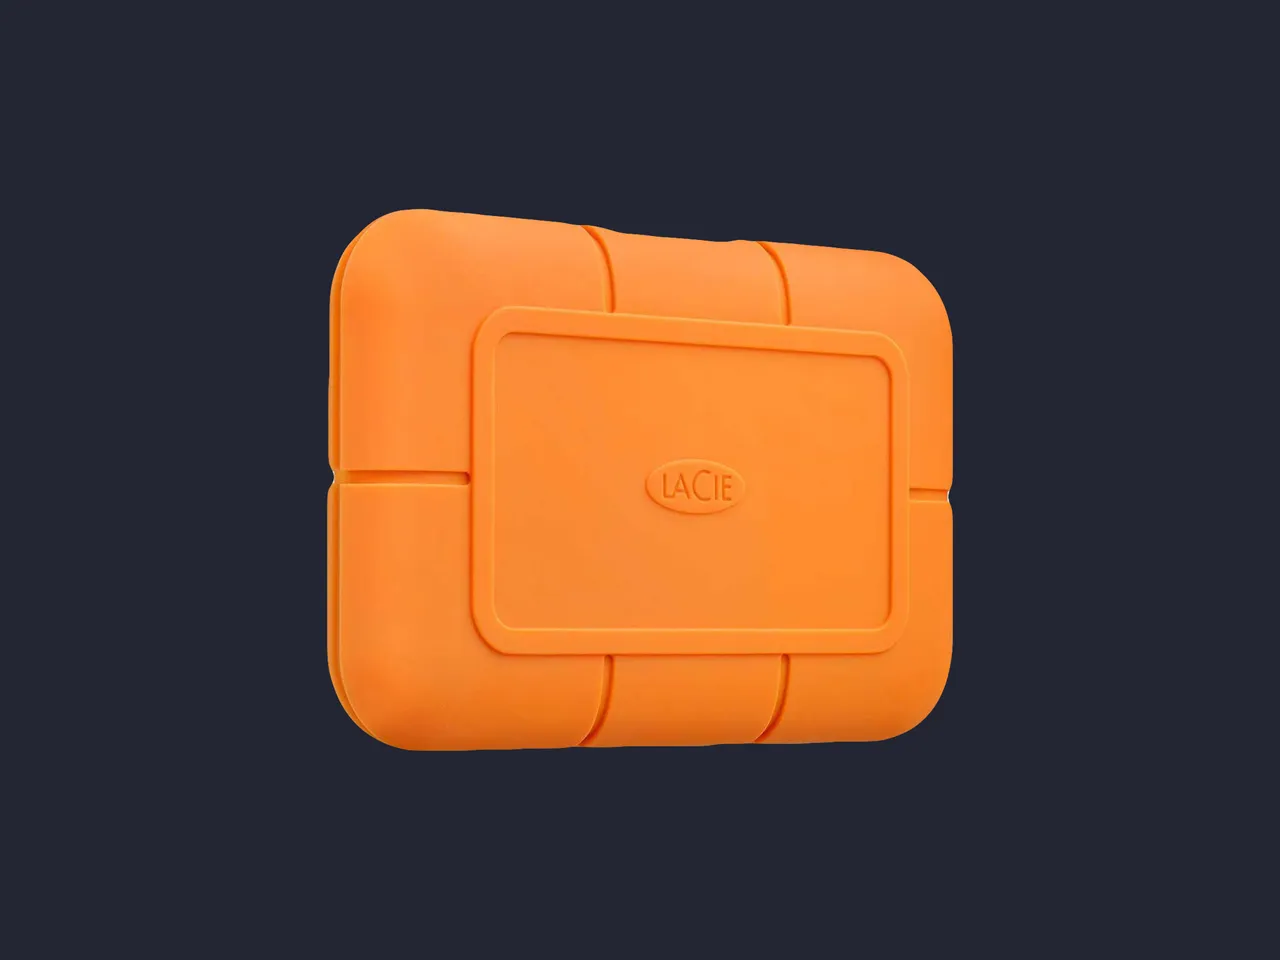 El SSD resistente de LaCie es una solución de almacenamiento externo robusta y duradera diseñada para soportar condiciones extremas. (Wired)